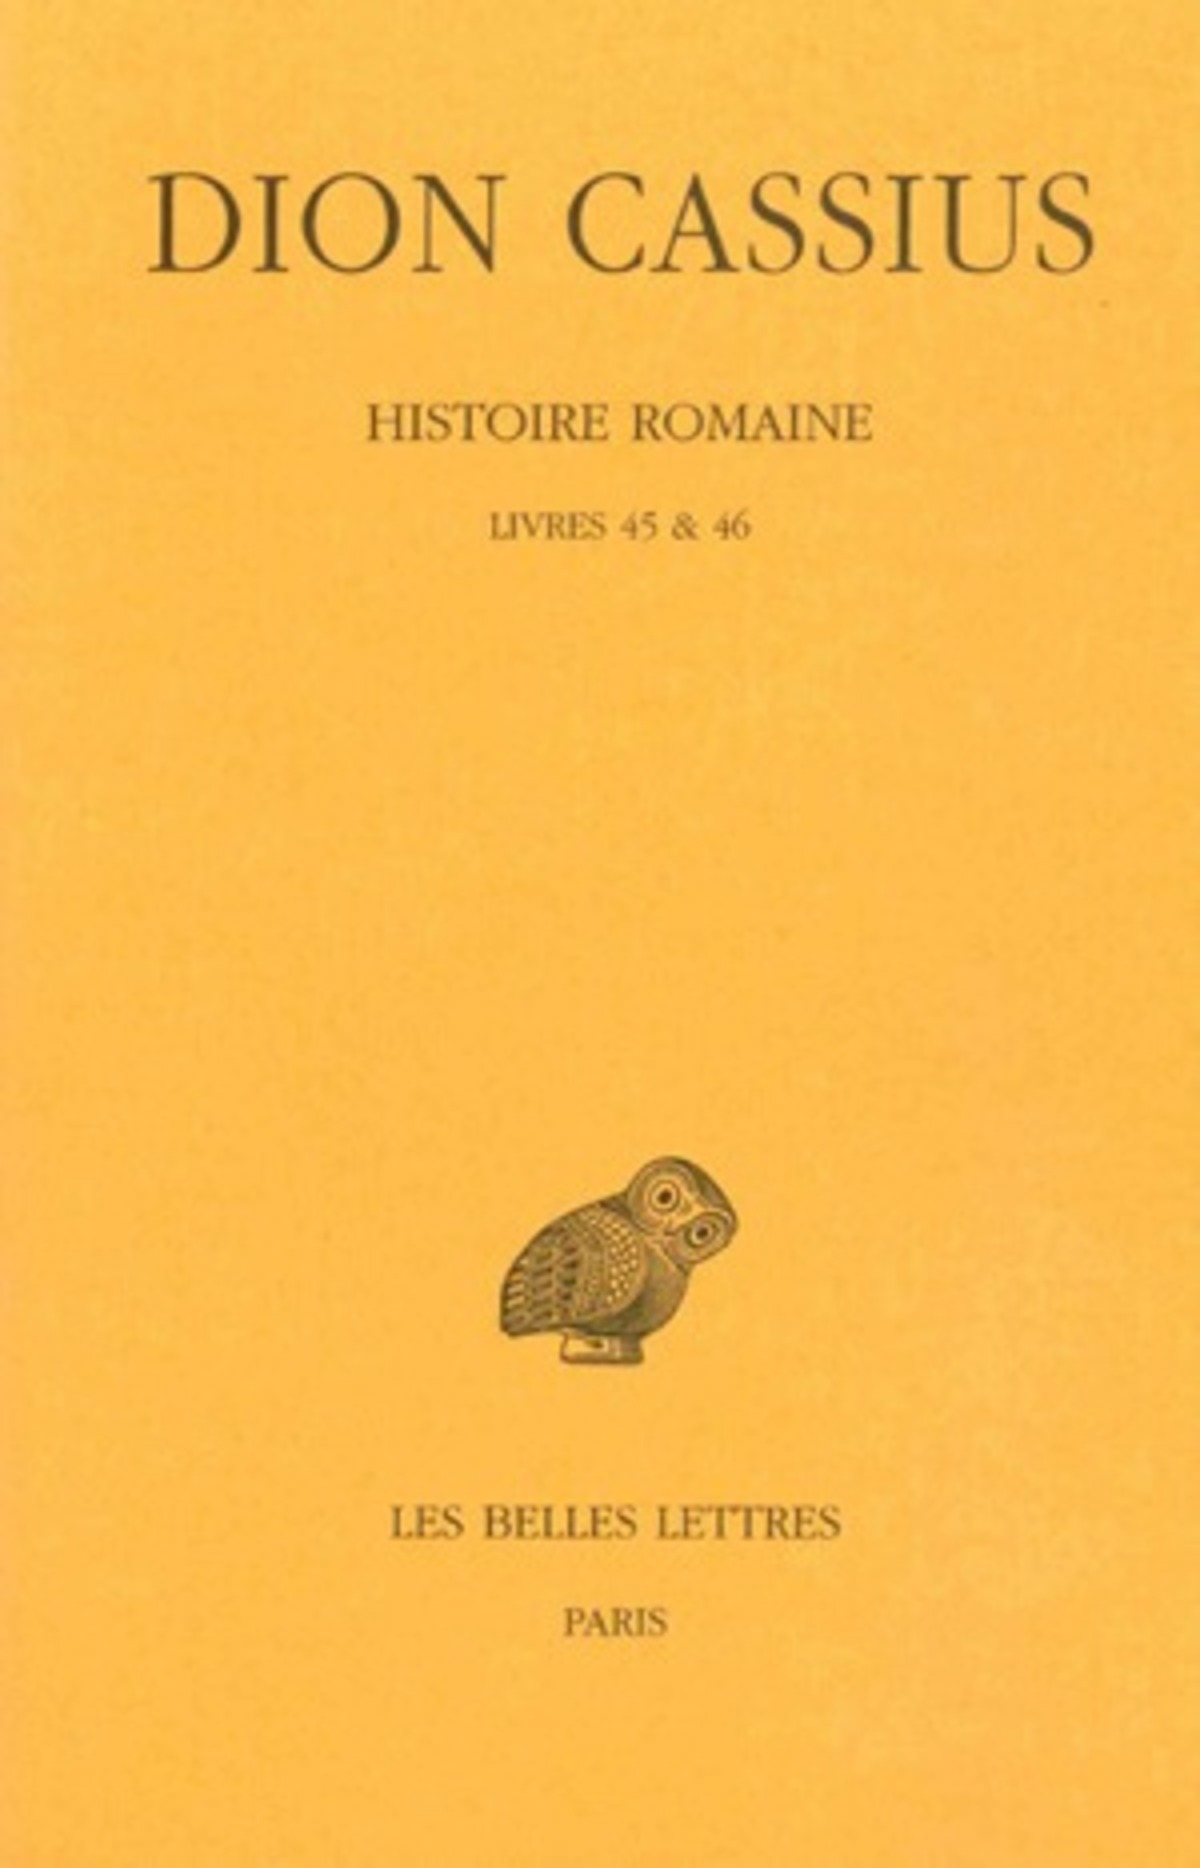 Histoire romaine. Livres 45 & 46